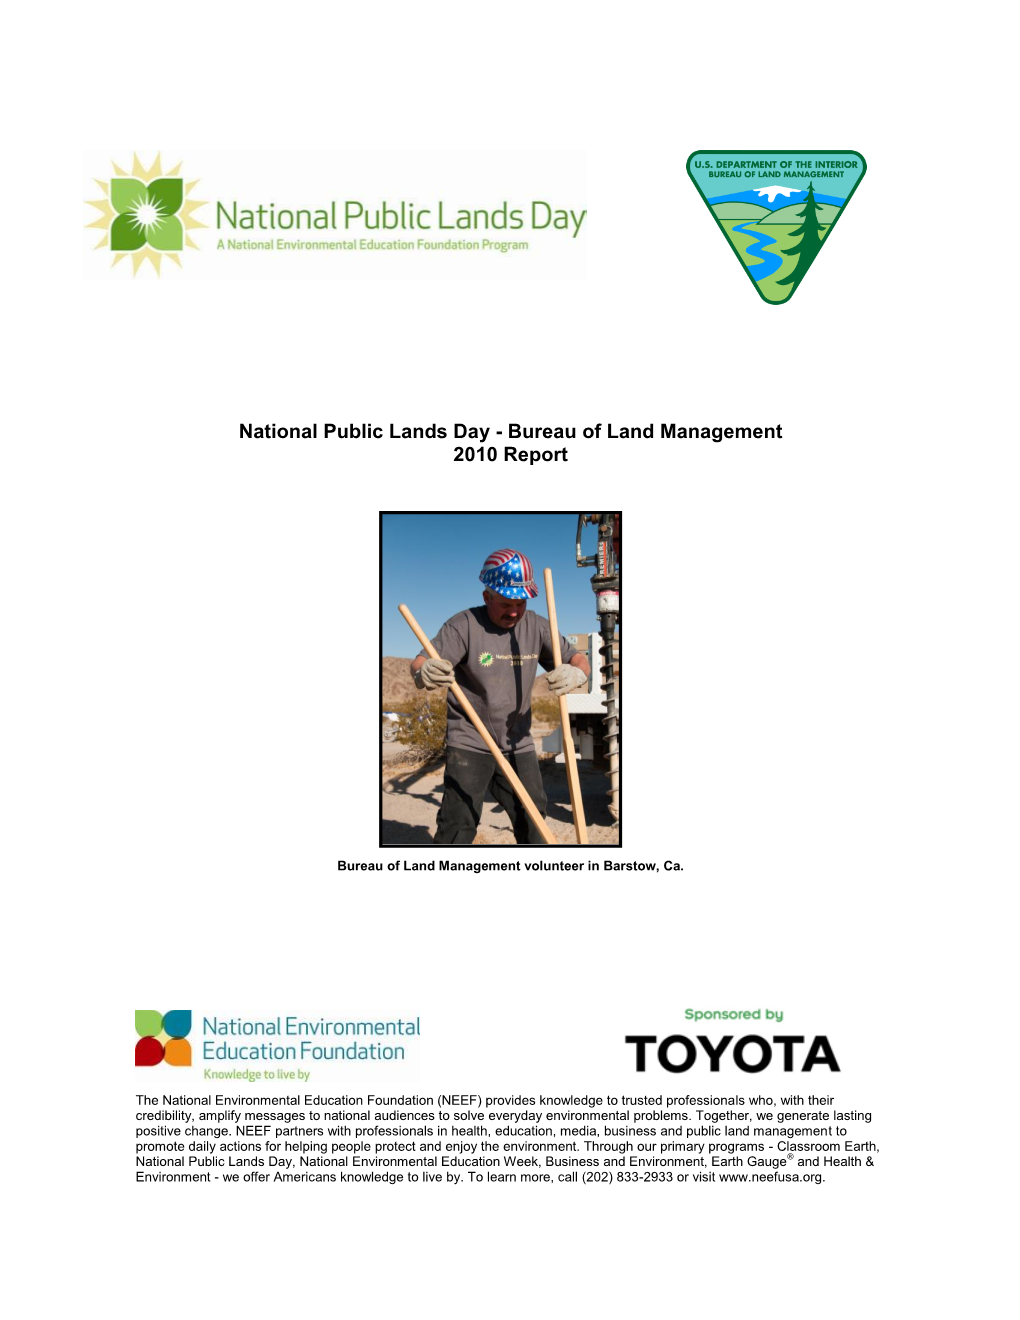 National Public Lands Day - Bureau of Land Management 2010 Report